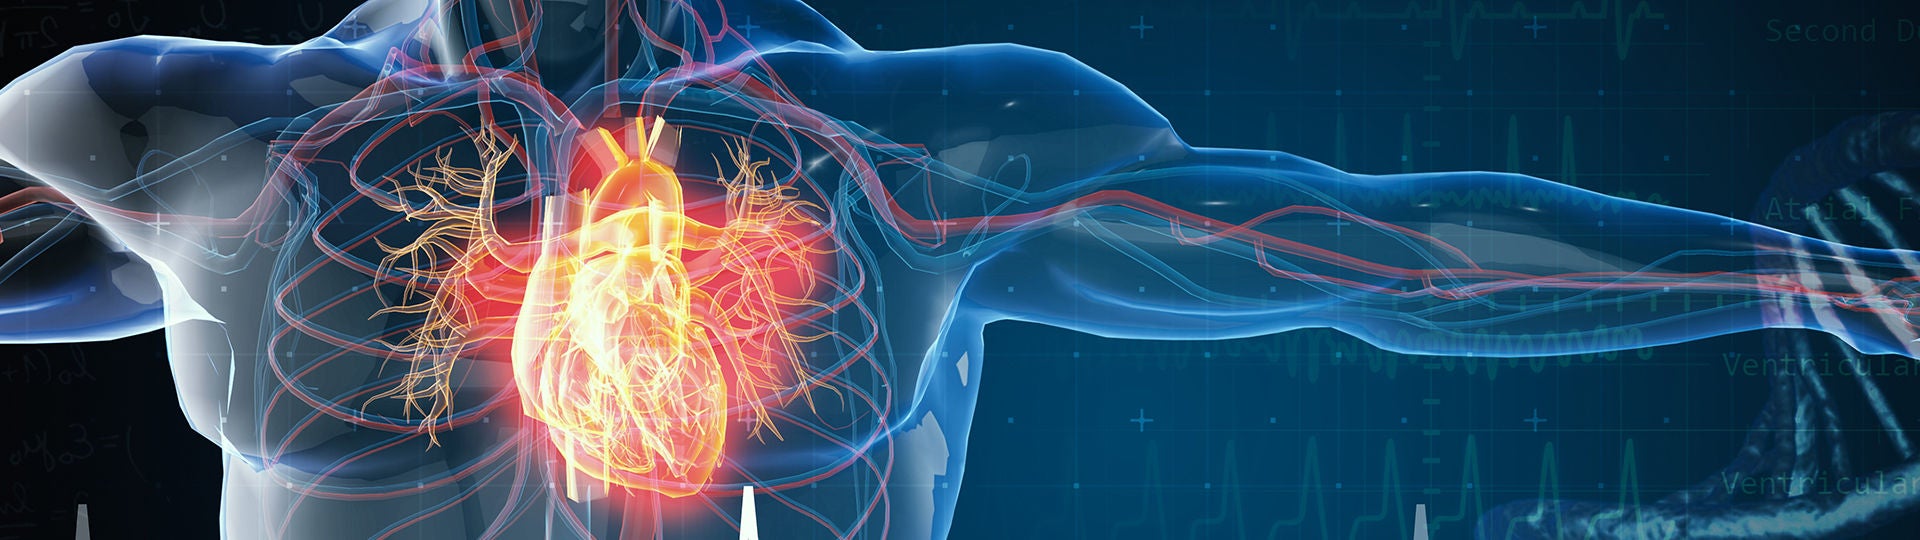 Grafik zeigt ein Herz in der Brust.